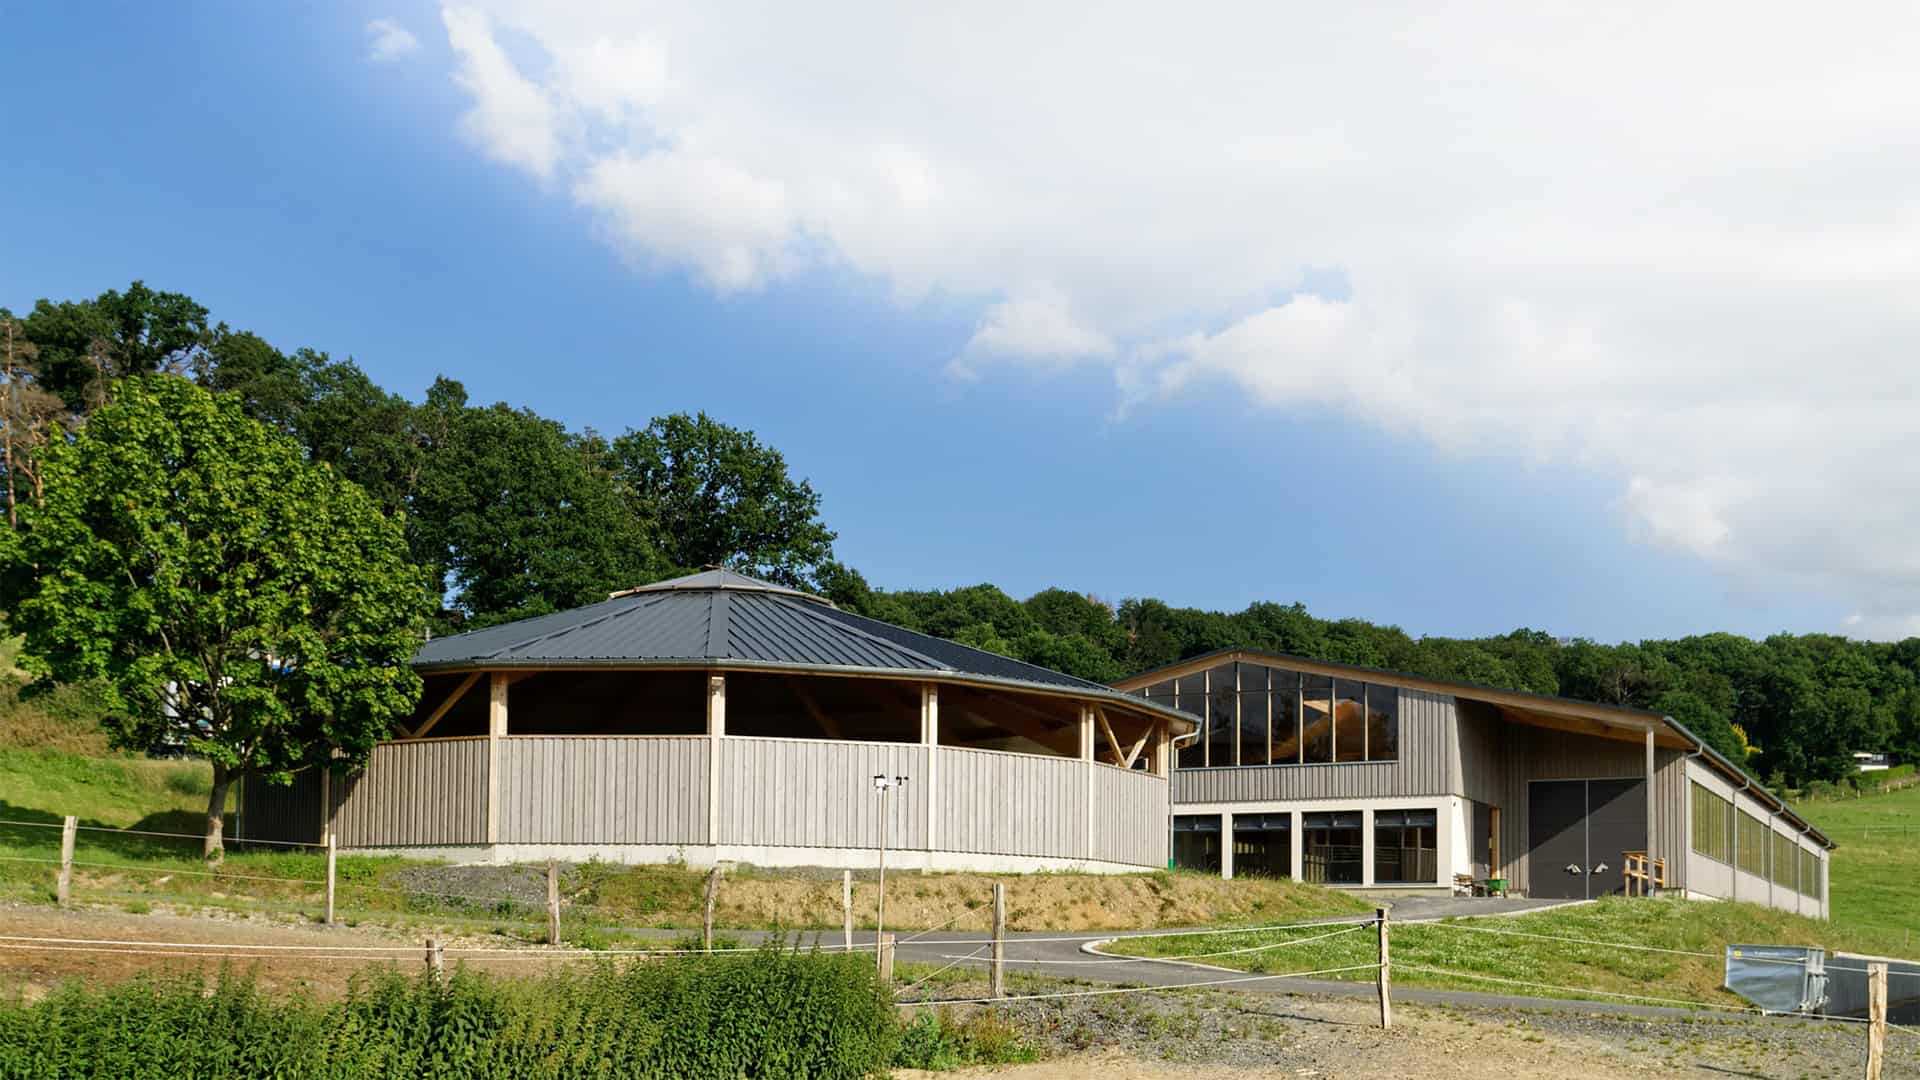 Reitanlage mit Reithalle und Longierhalle mit grau gestrichener Holzfassade